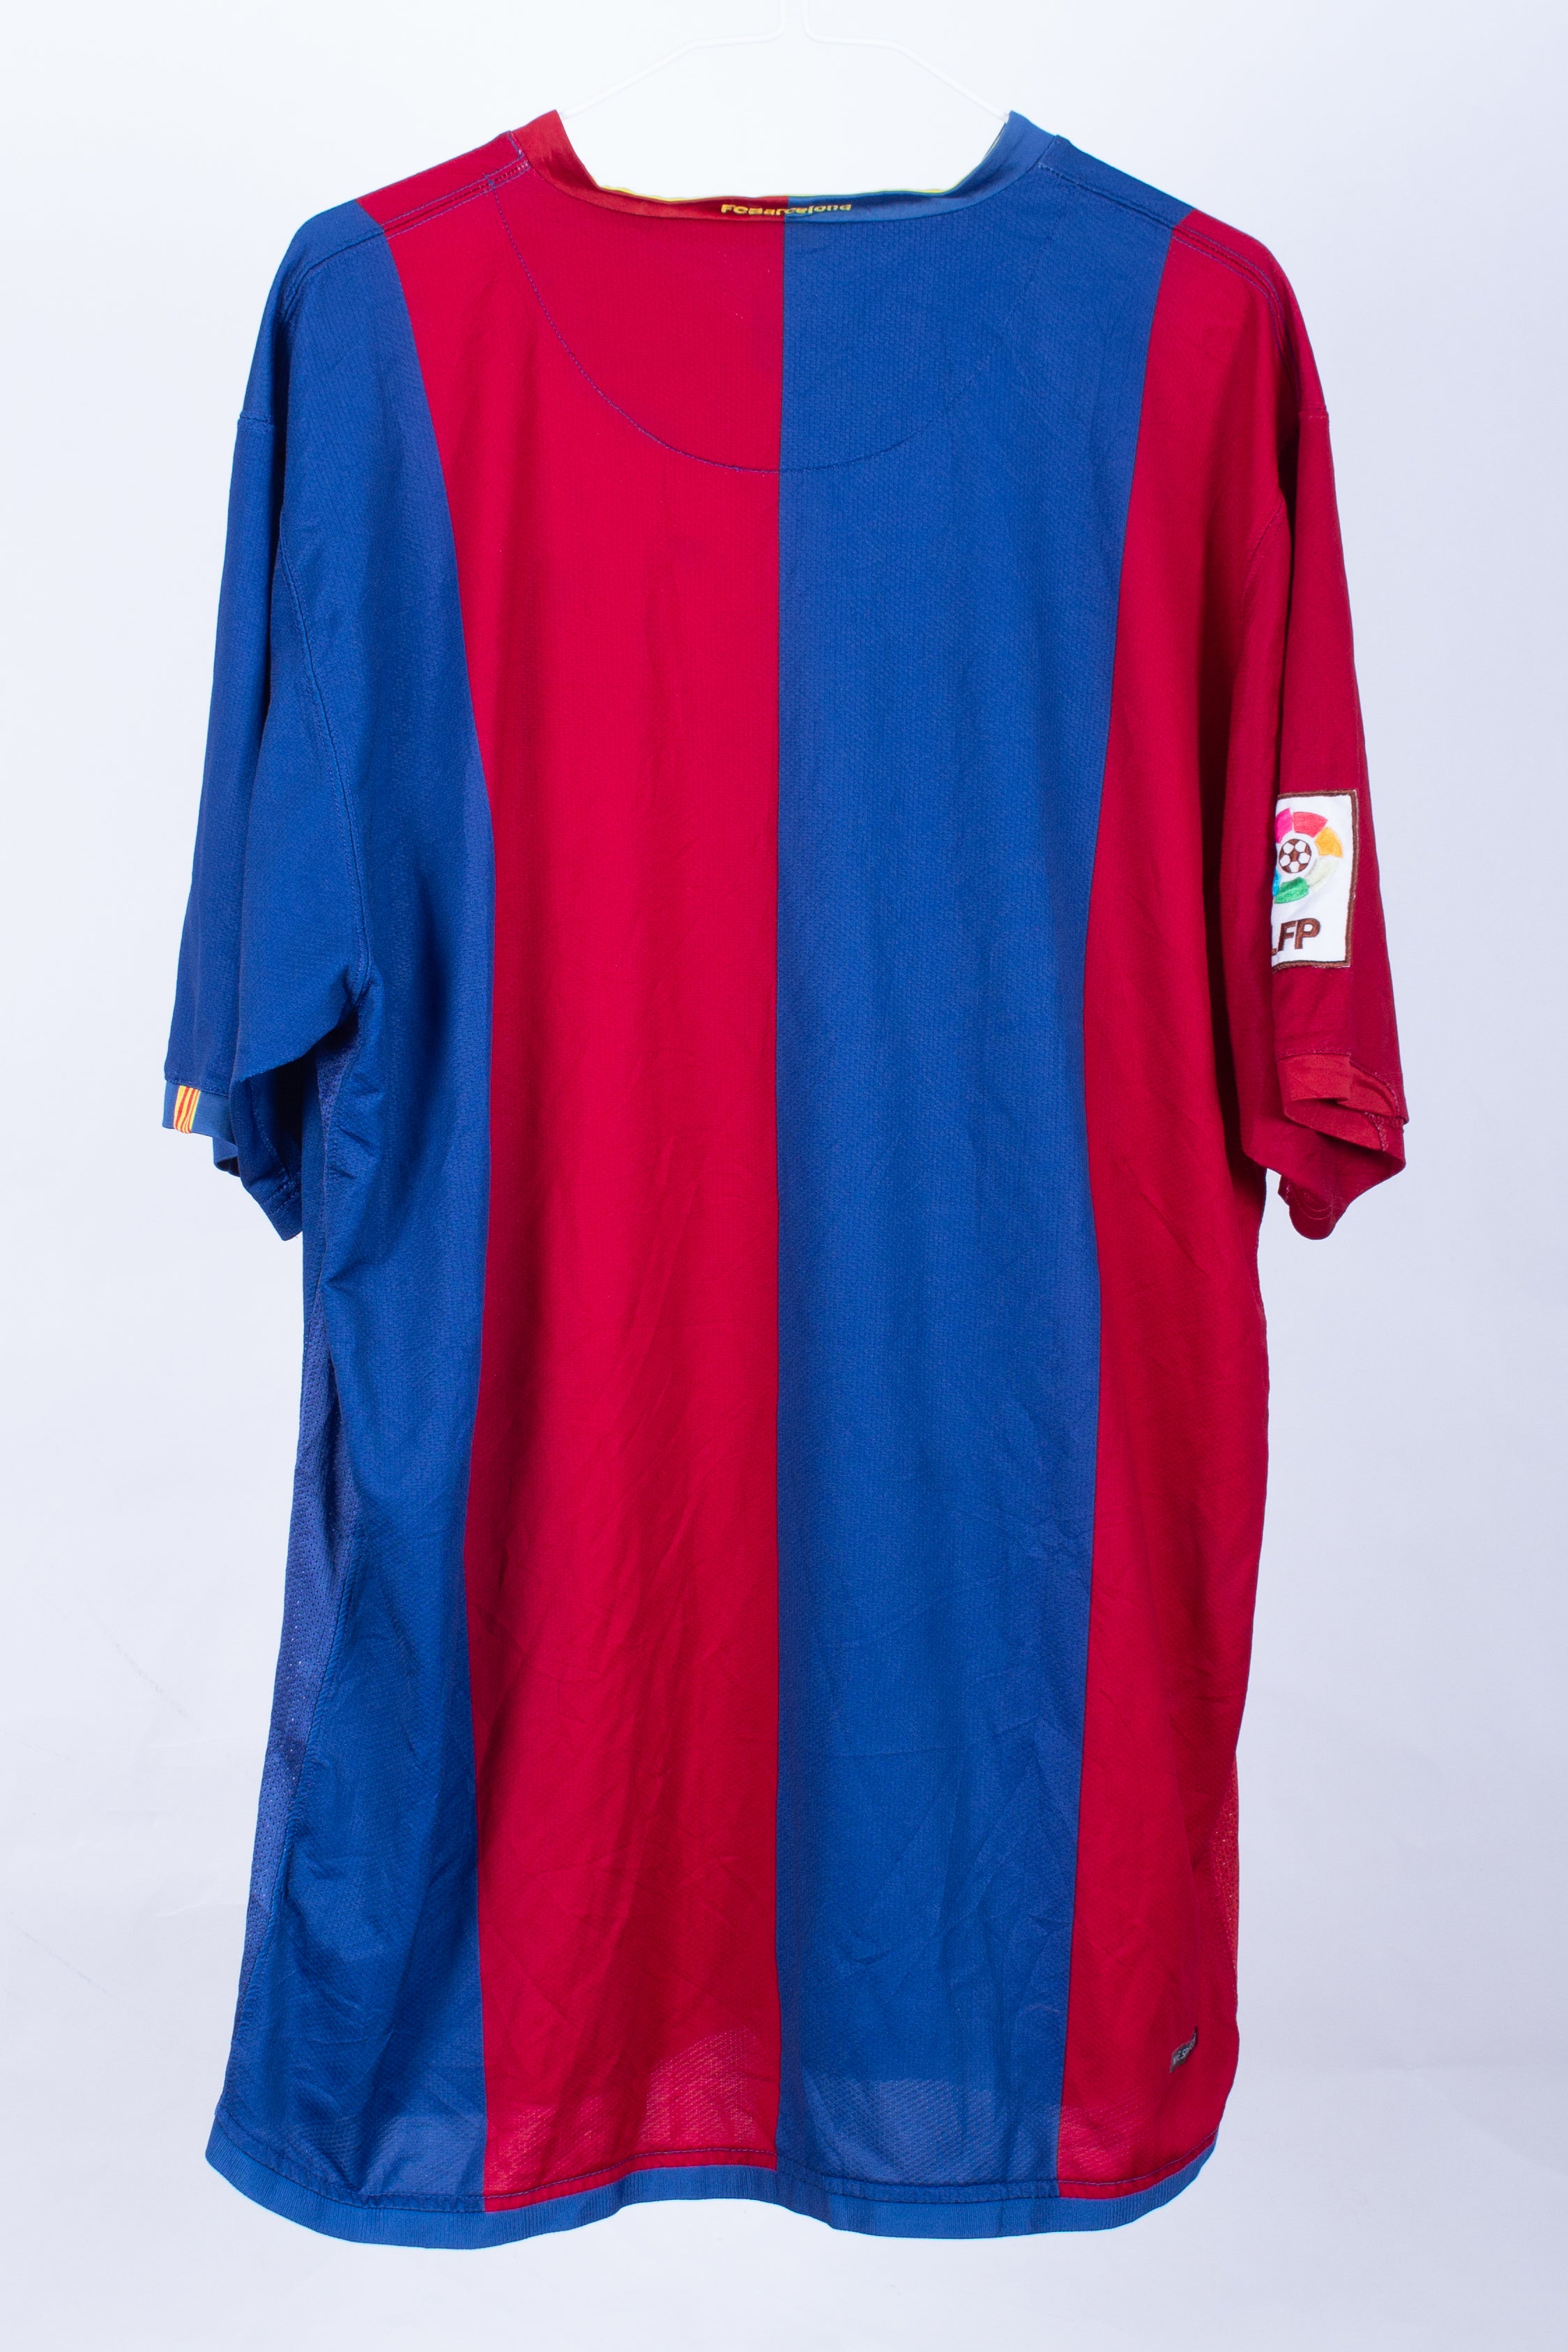 Barcelona 2006/07 *Player Spec* Home Shirt (XL)